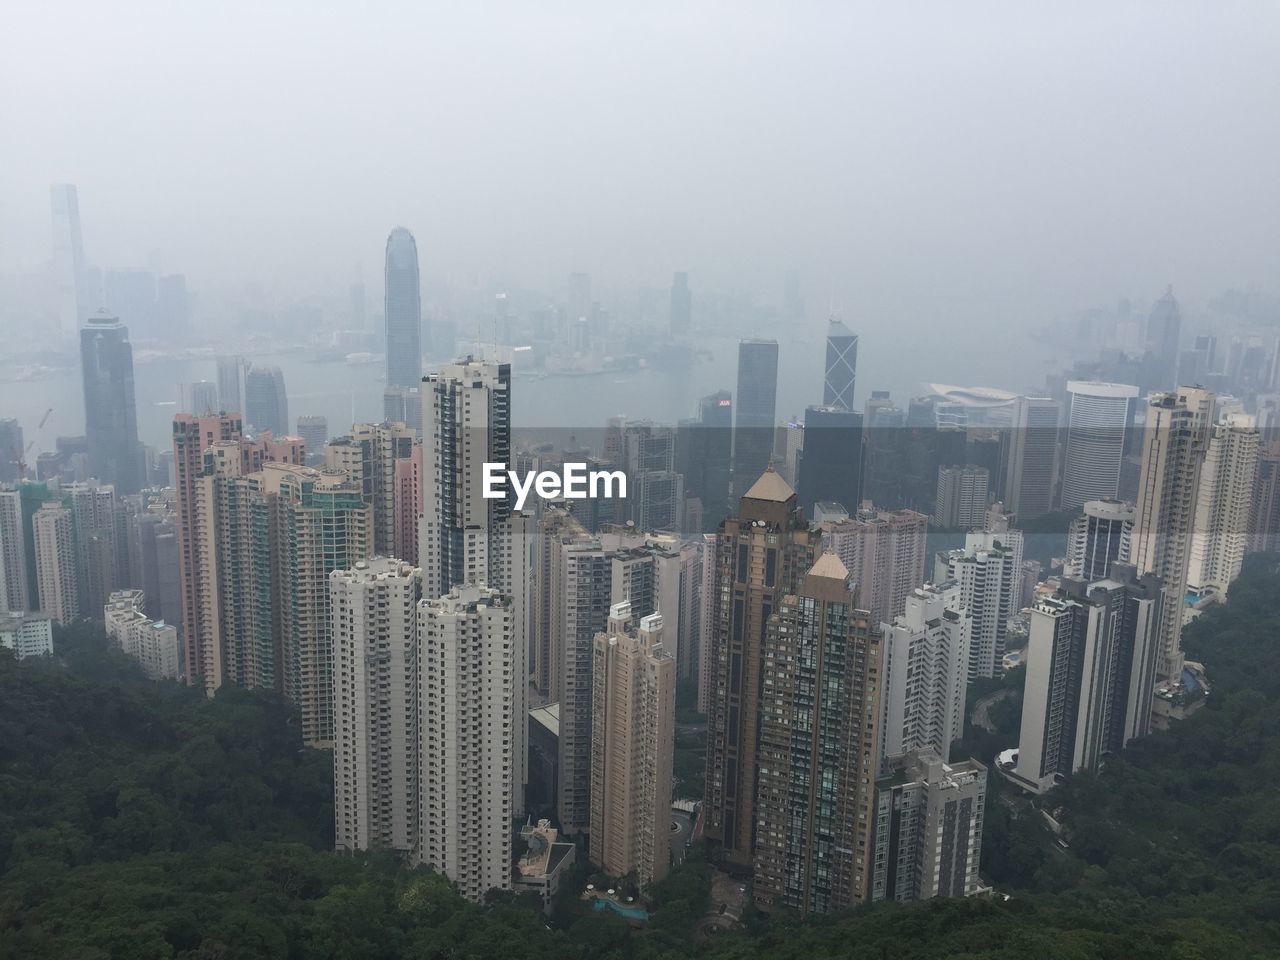 Kowloon peak viewing point, hong kong